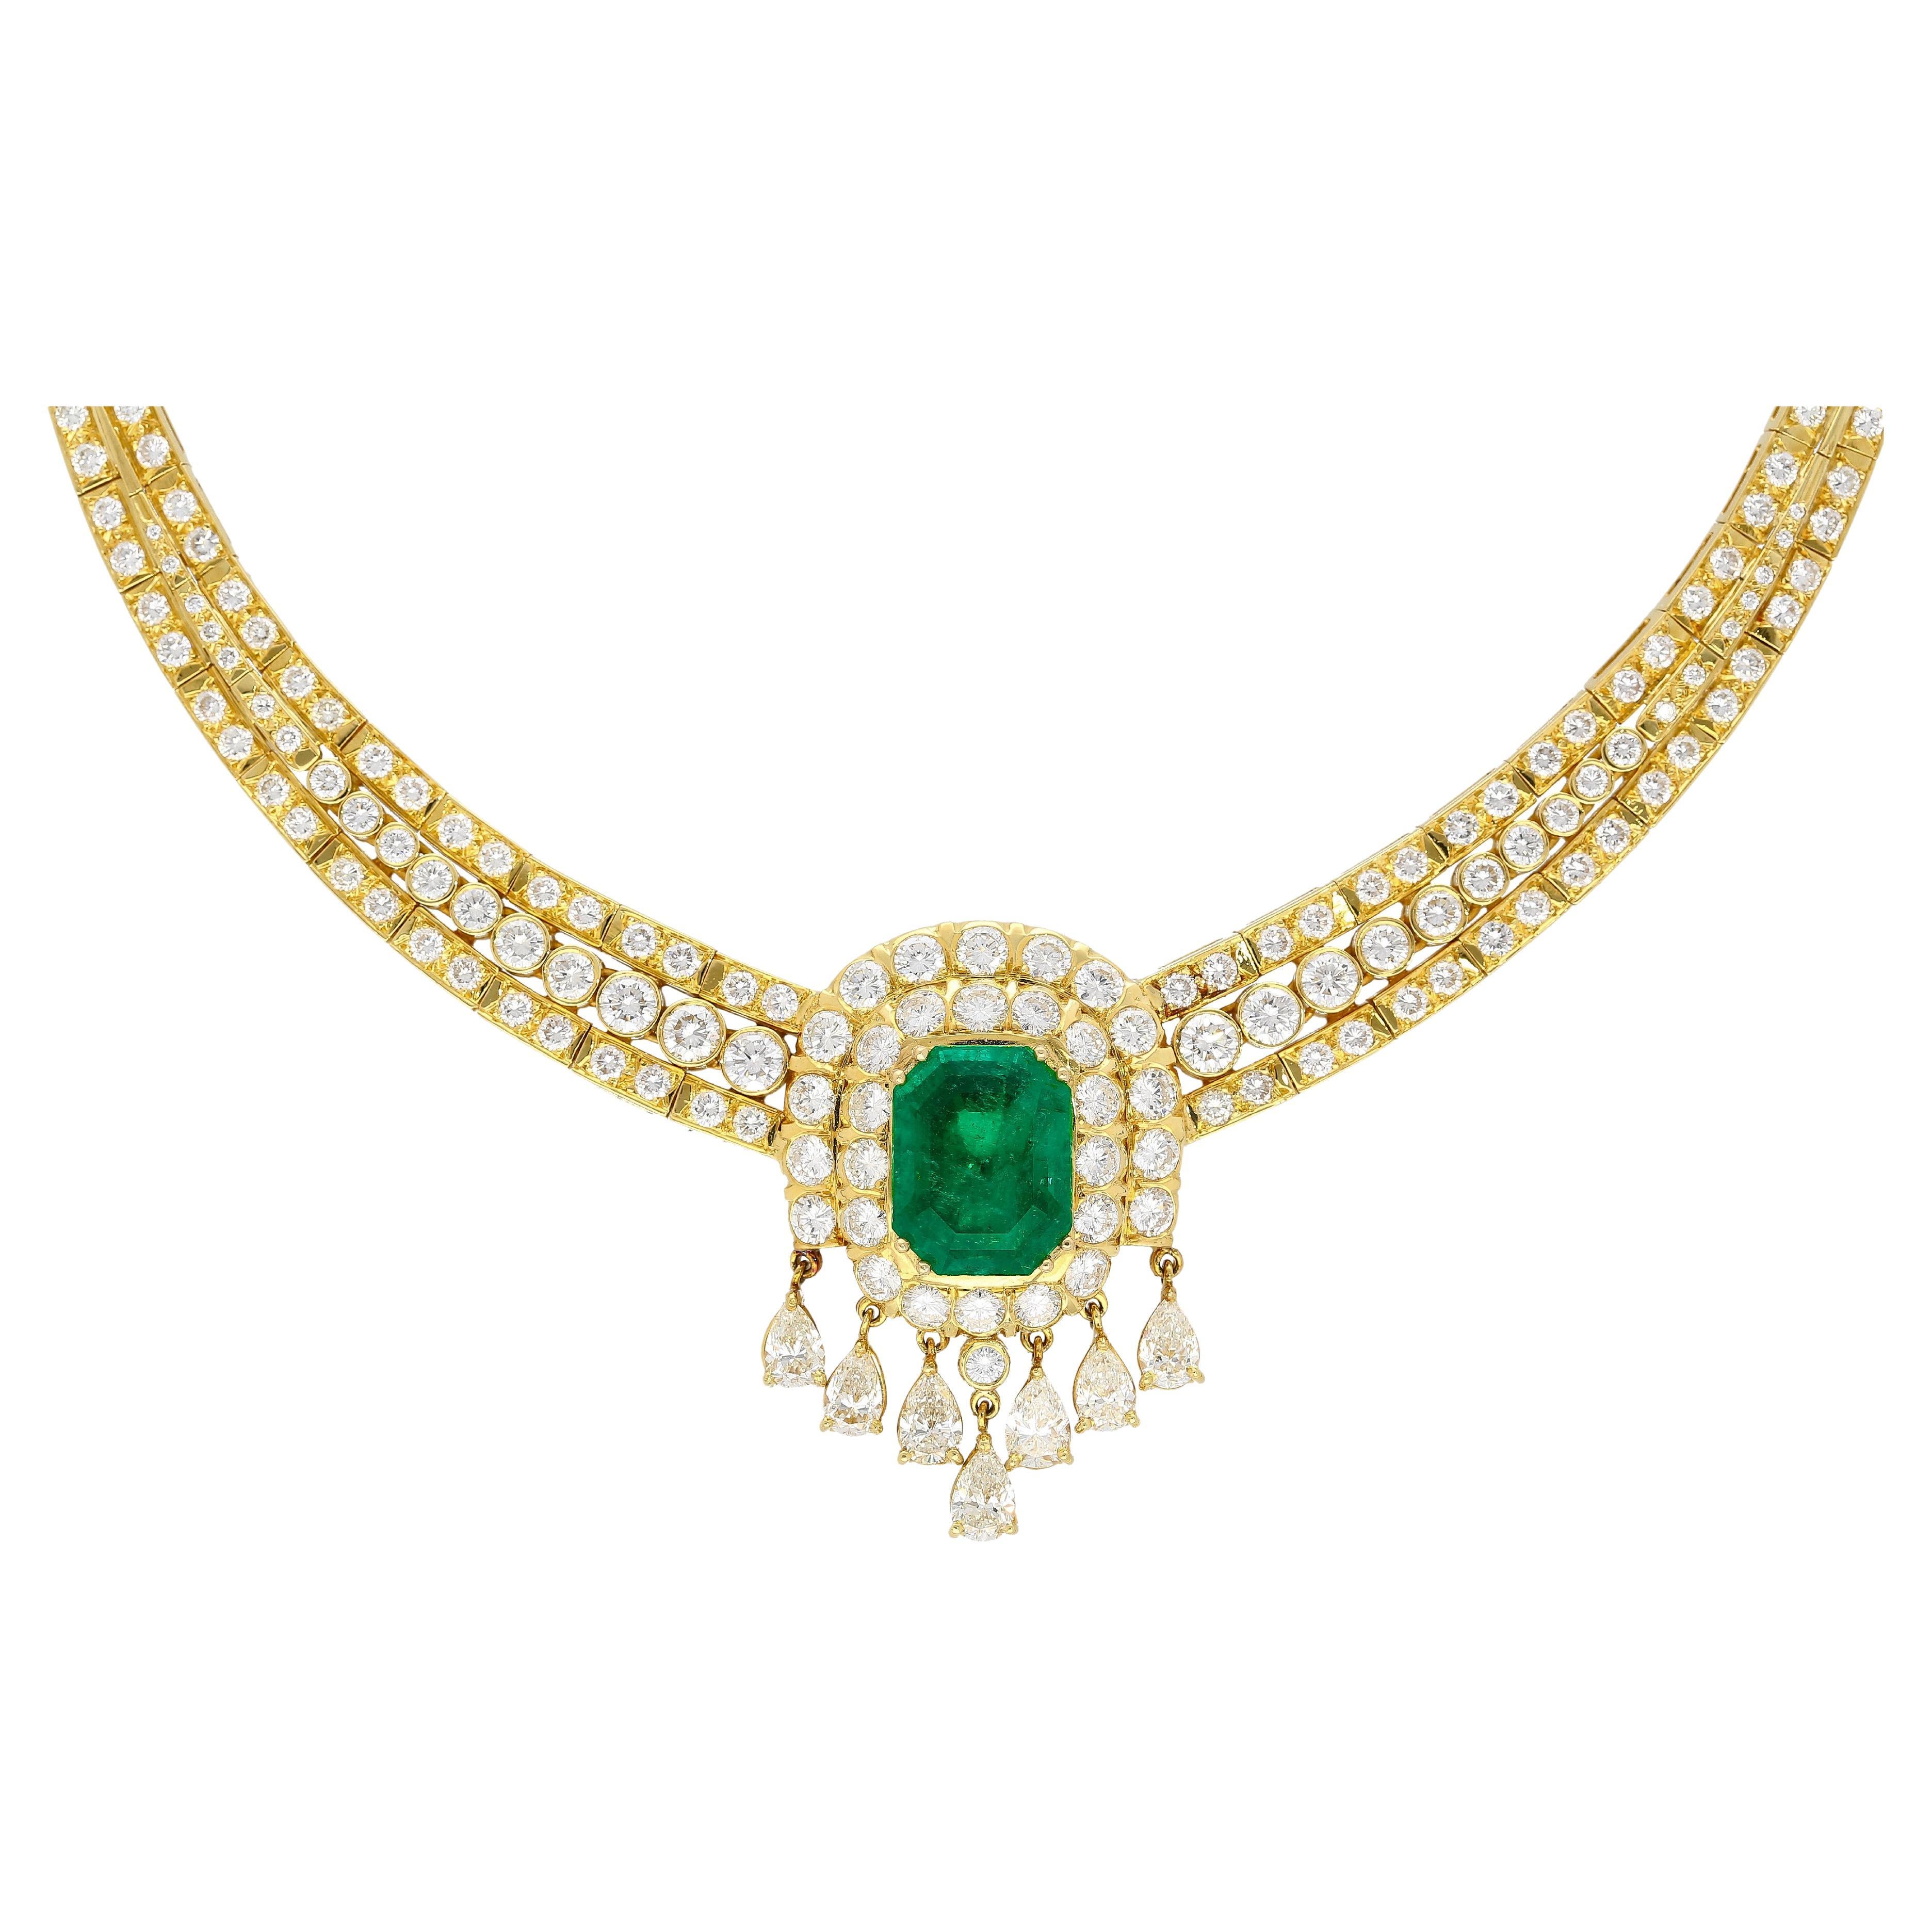 27 Carat Colombian Emerald & Diamond Chandelier Regal Choker Necklace in 18k